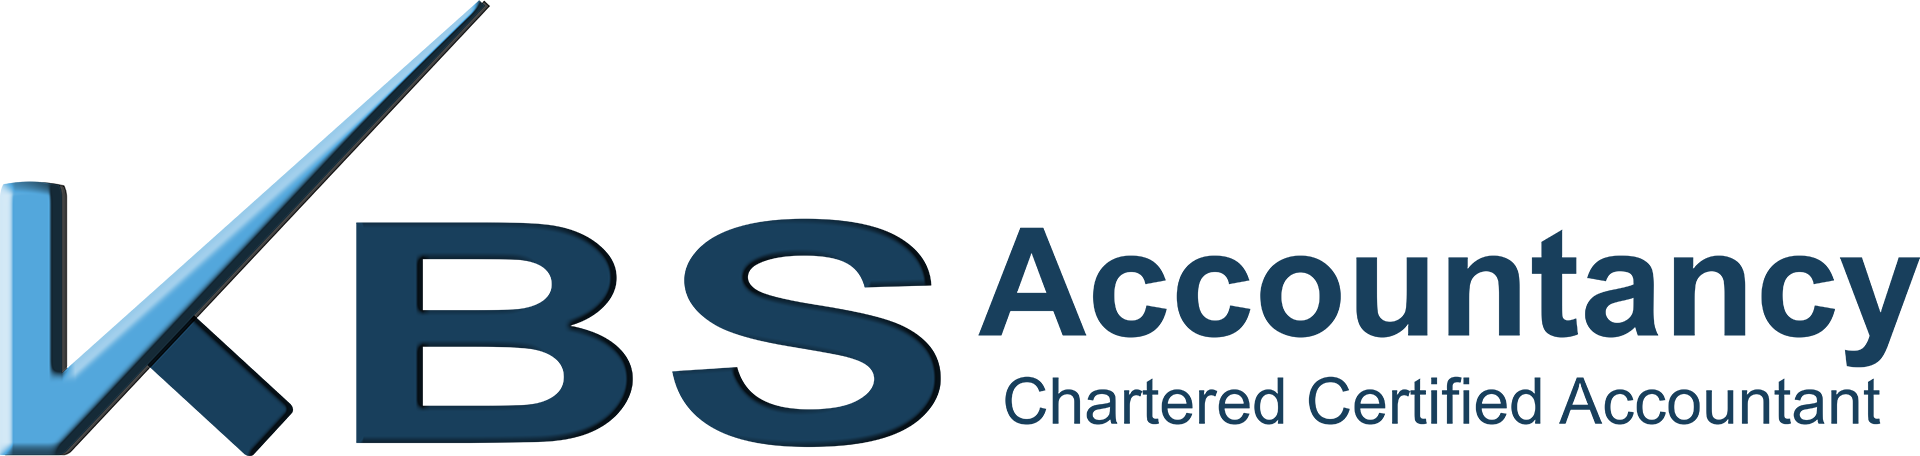 accountants logo